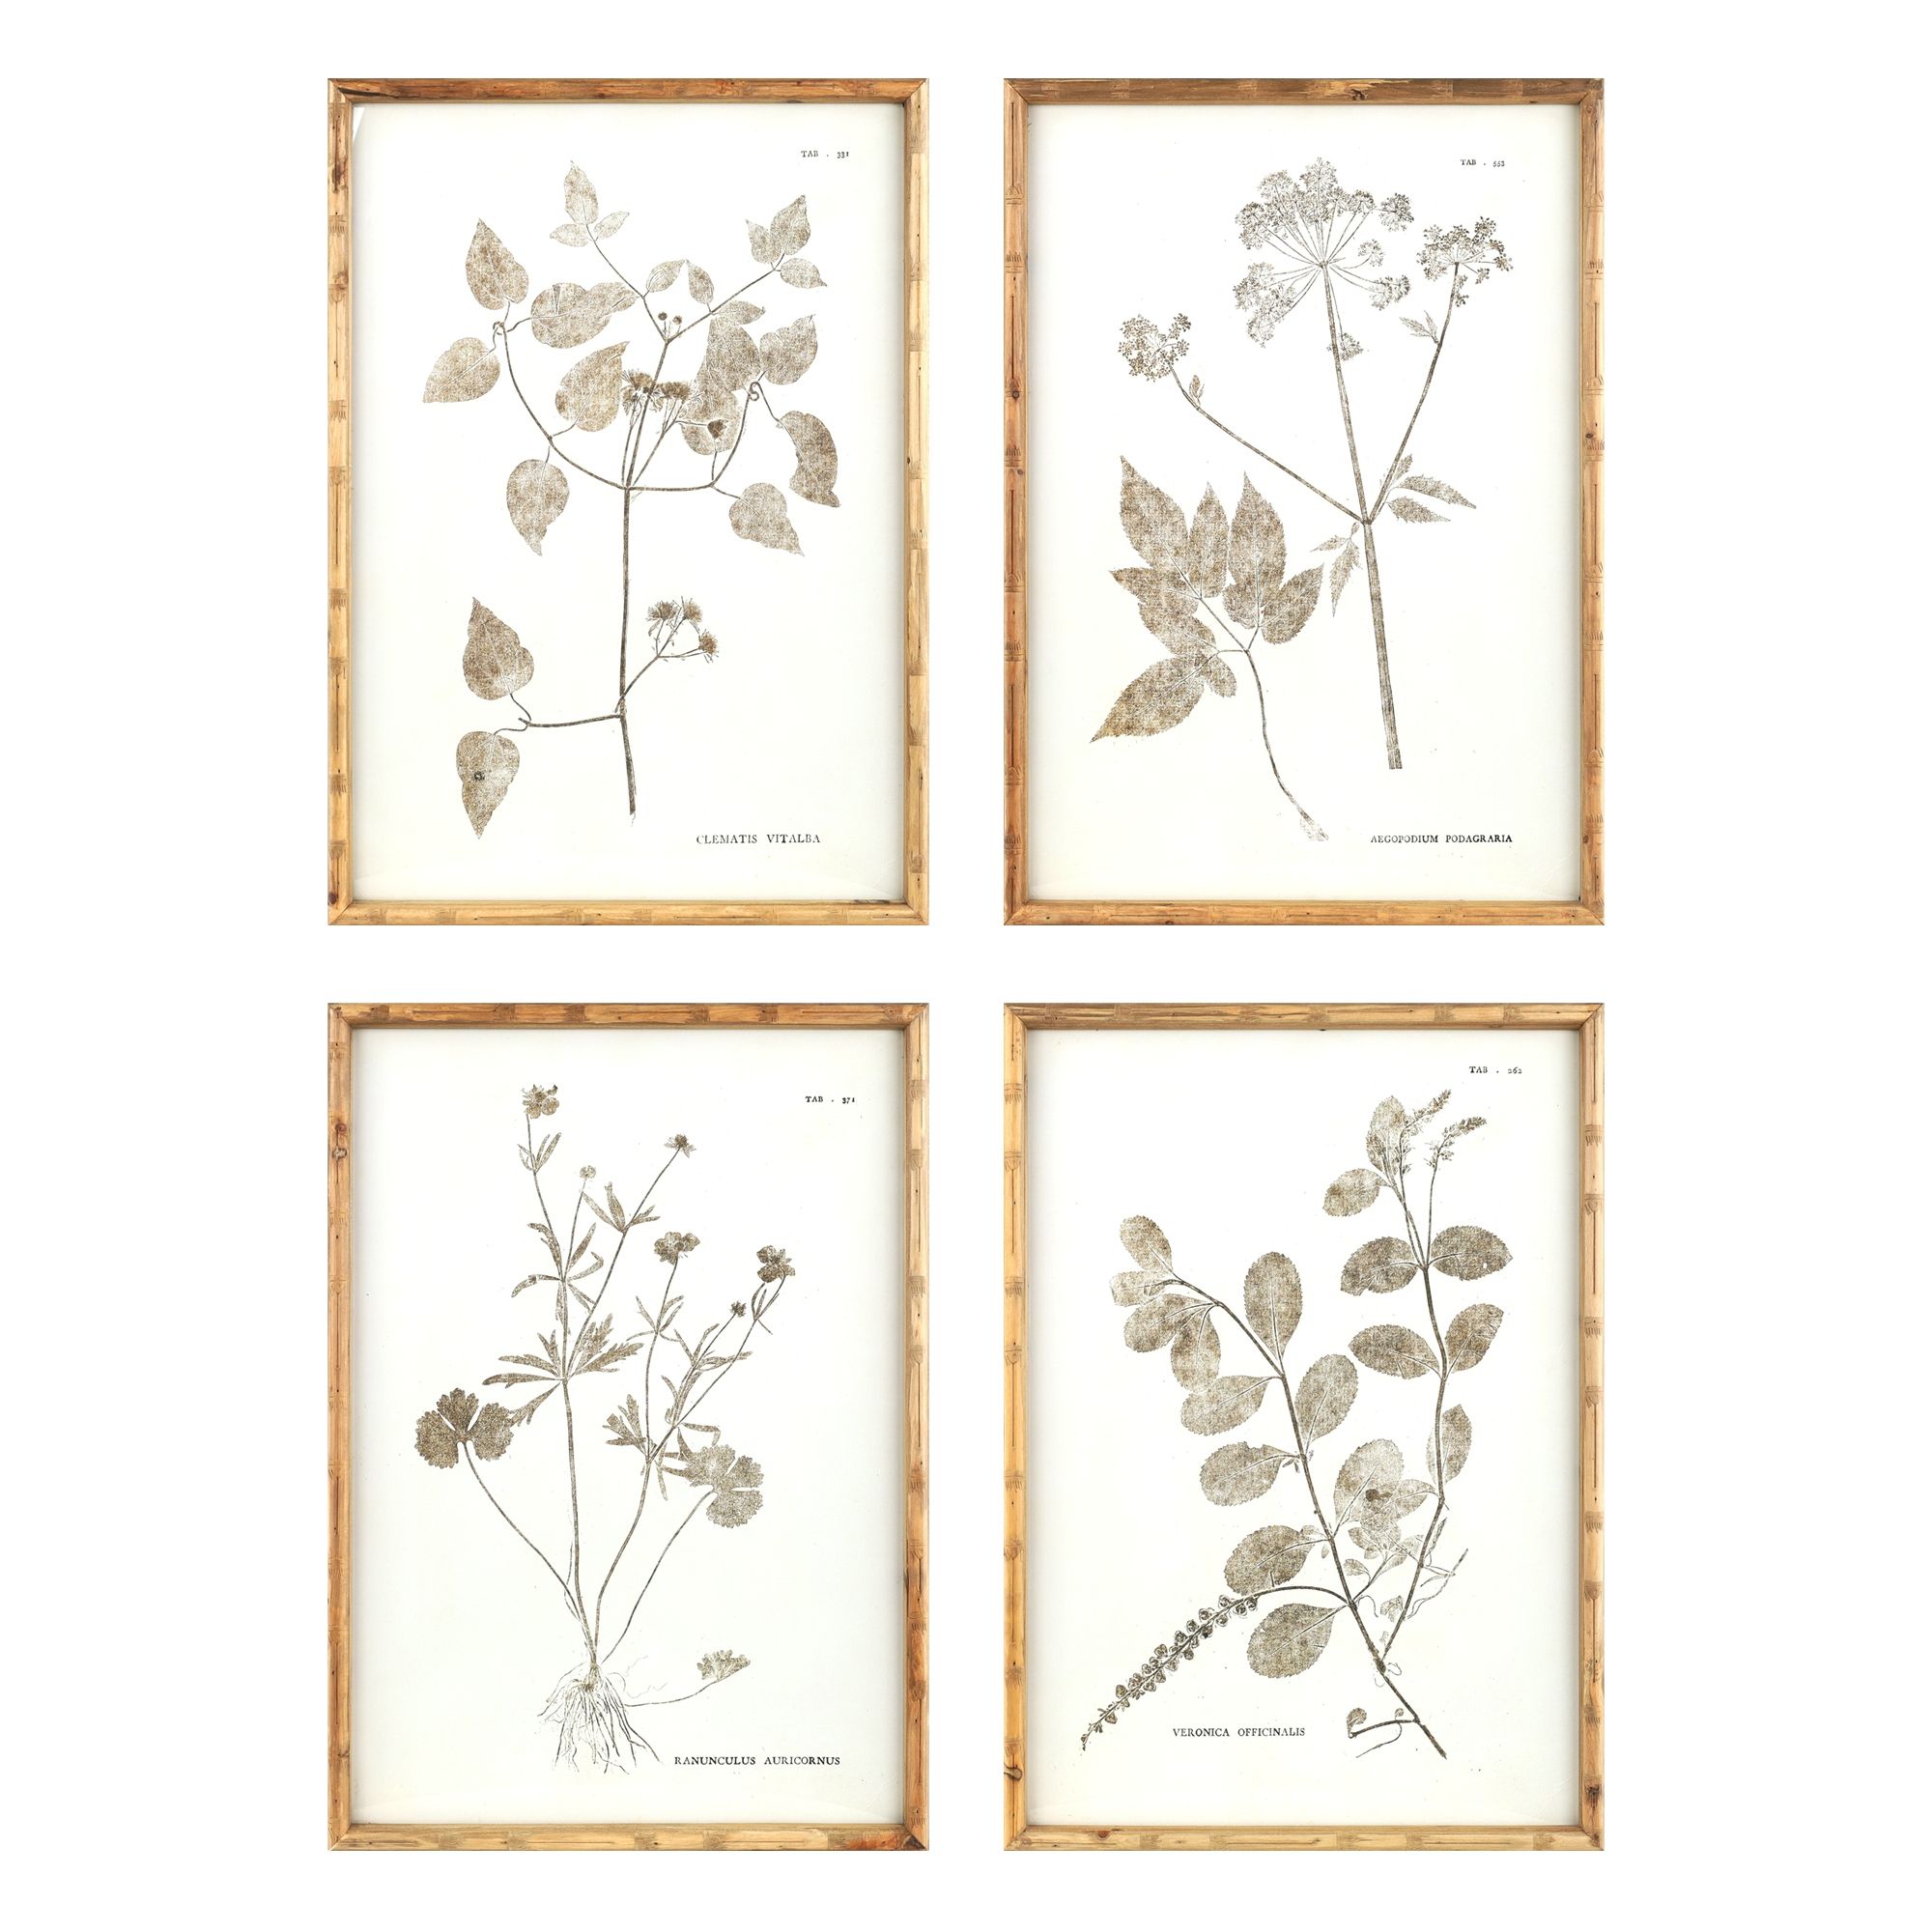 Melrose Encyclopedia Floral Framed Wall Art - 19.5" x 27" - Set of 4